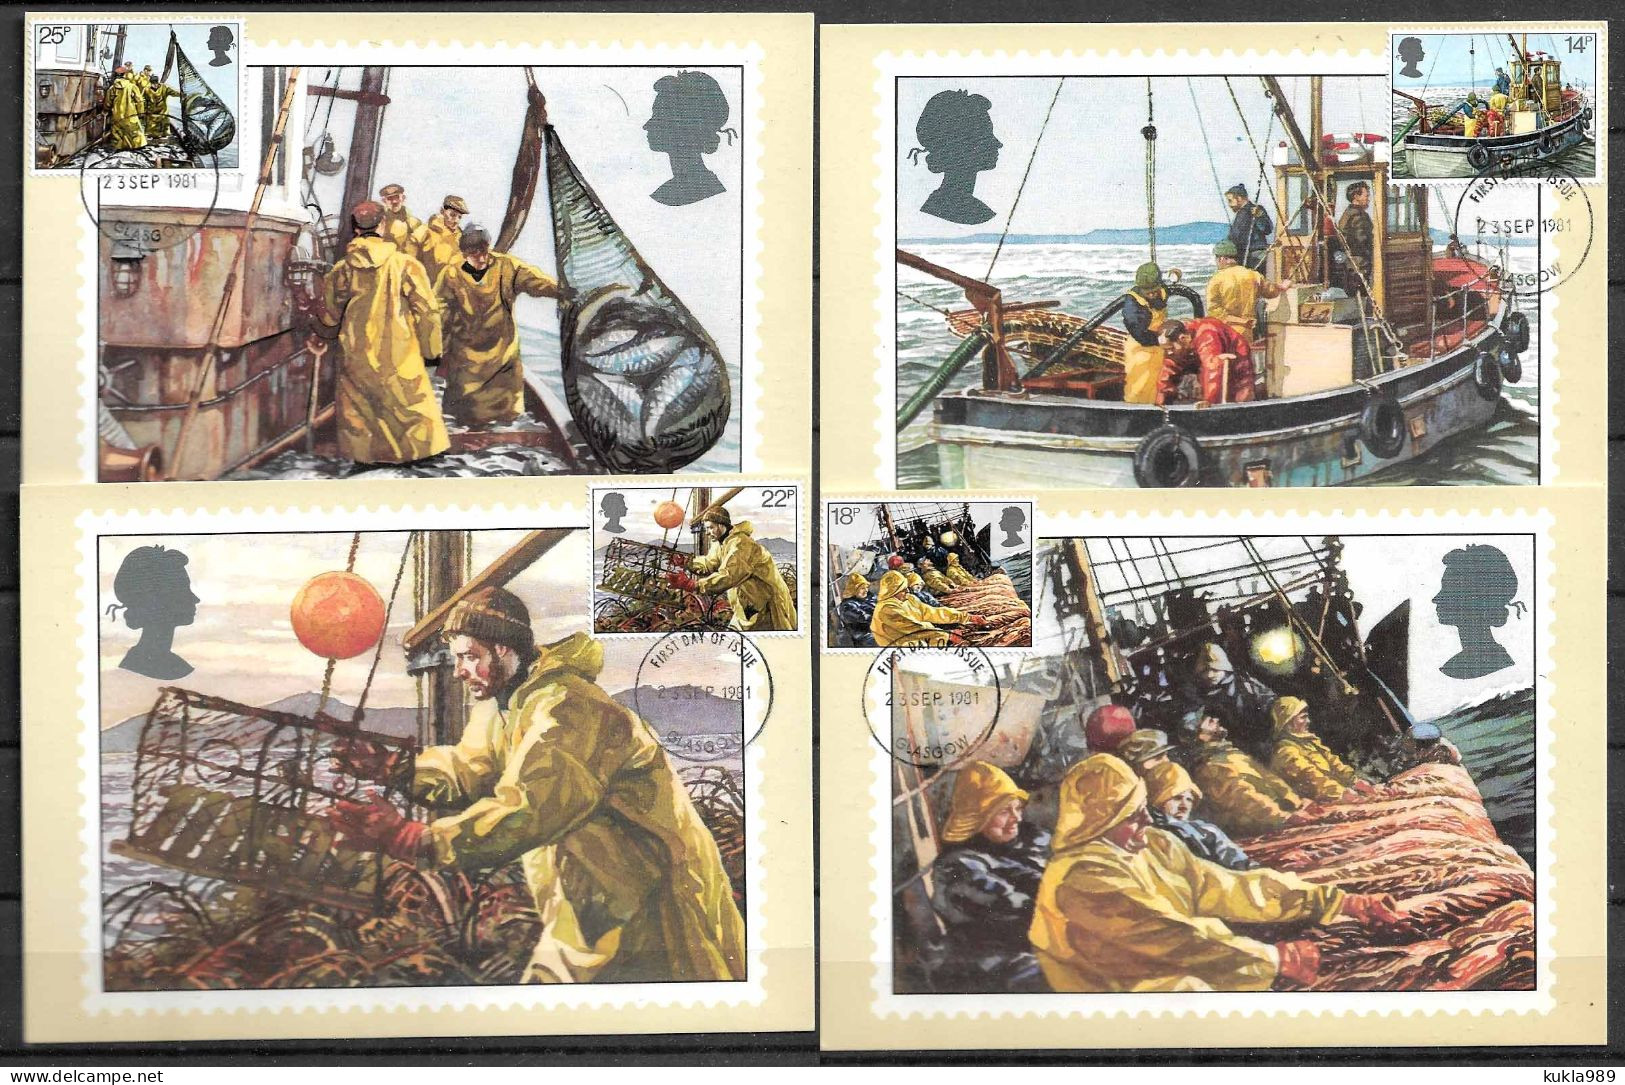 GB STAMPS. 1981 SET OF 4 MAXIMUM CARDS MC  FISHING, UNUSED - Maximum Cards